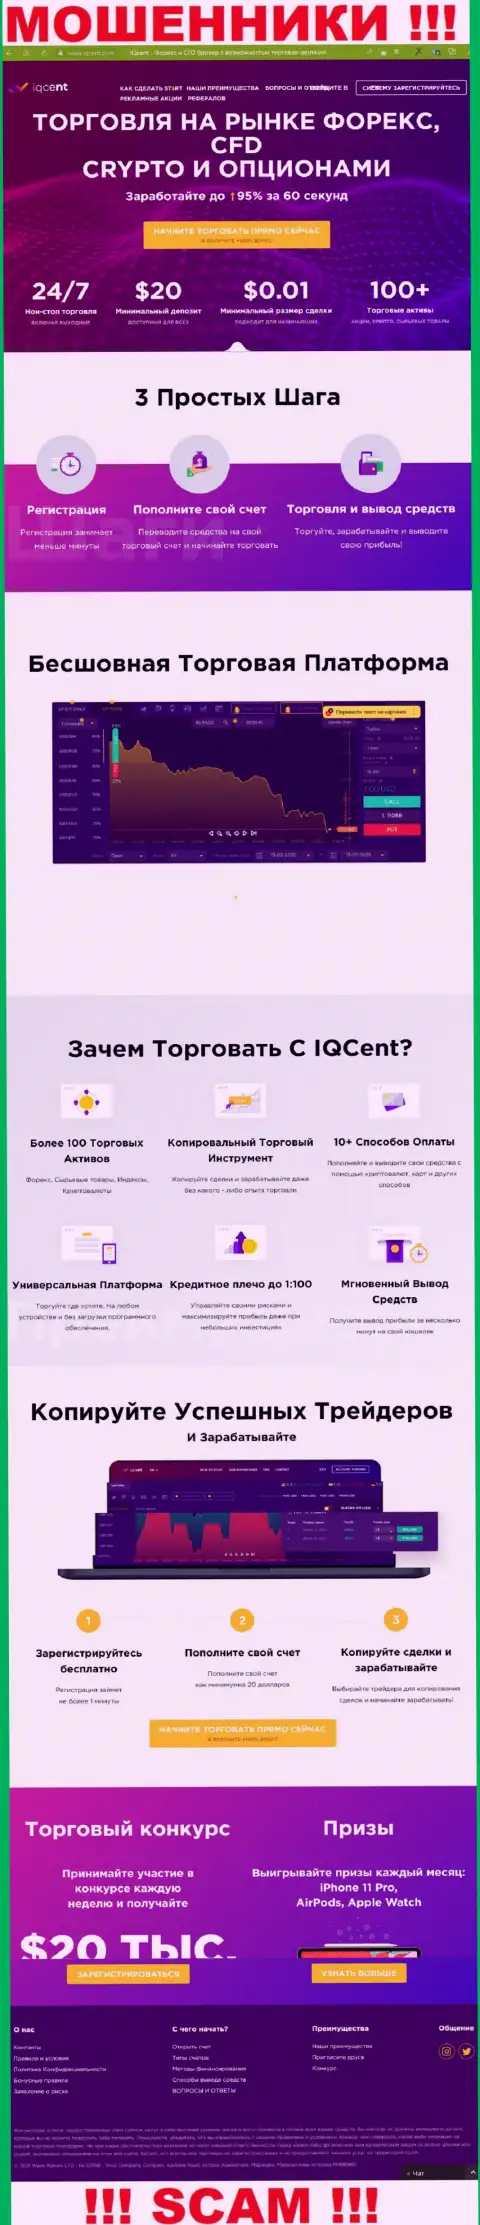 Официальный интернет-портал мошенников IQCent Com, заполненный информацией для доверчивых людей